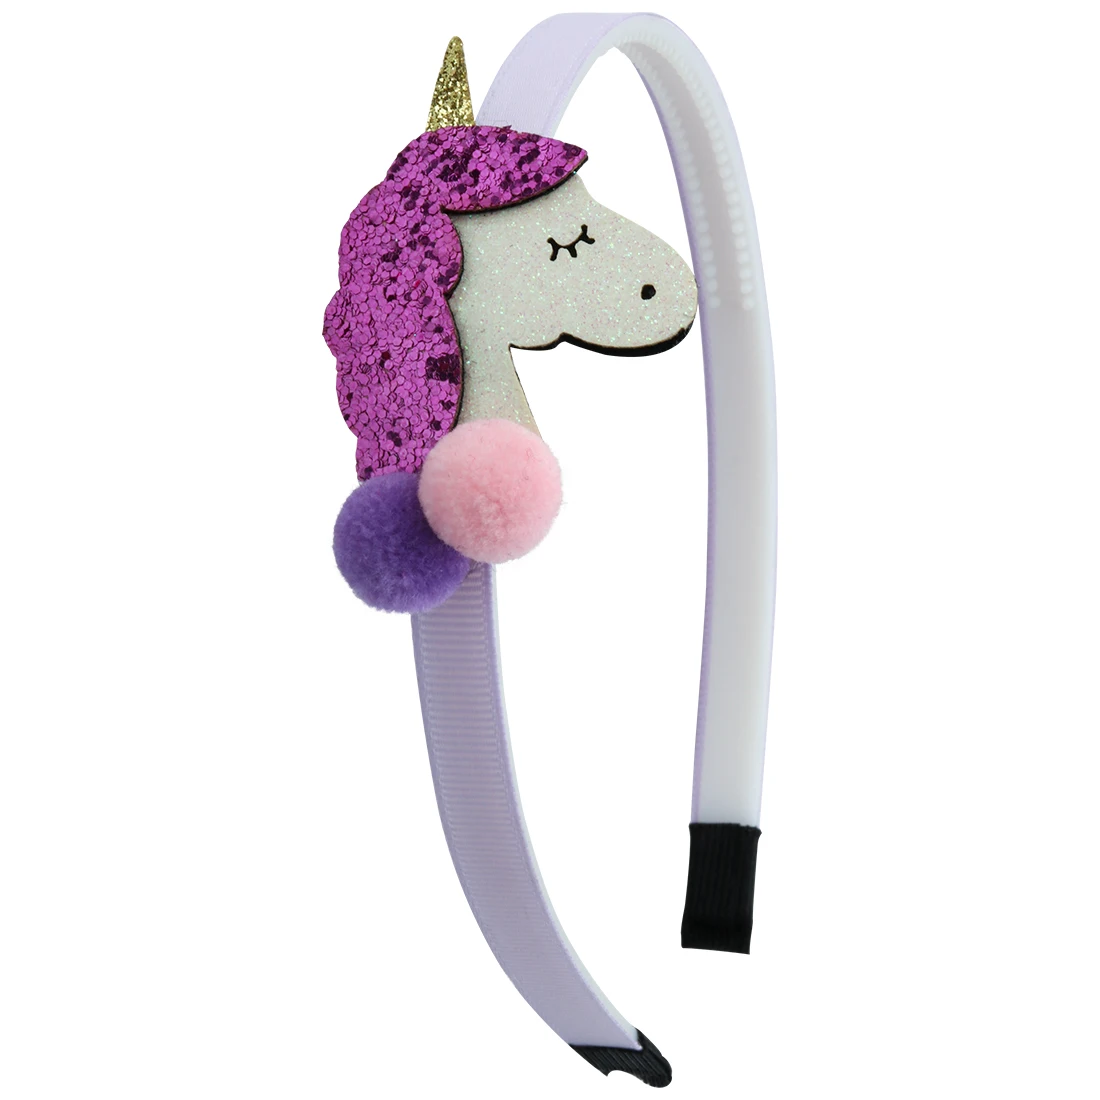 XIMA 1 шт в наборе, блестящая повязка на голову "Единорог" для девочек Пластик ободок для волос; Детские аксессуары для волос «Unicorn Hair «зверополис» для вечерние поставки